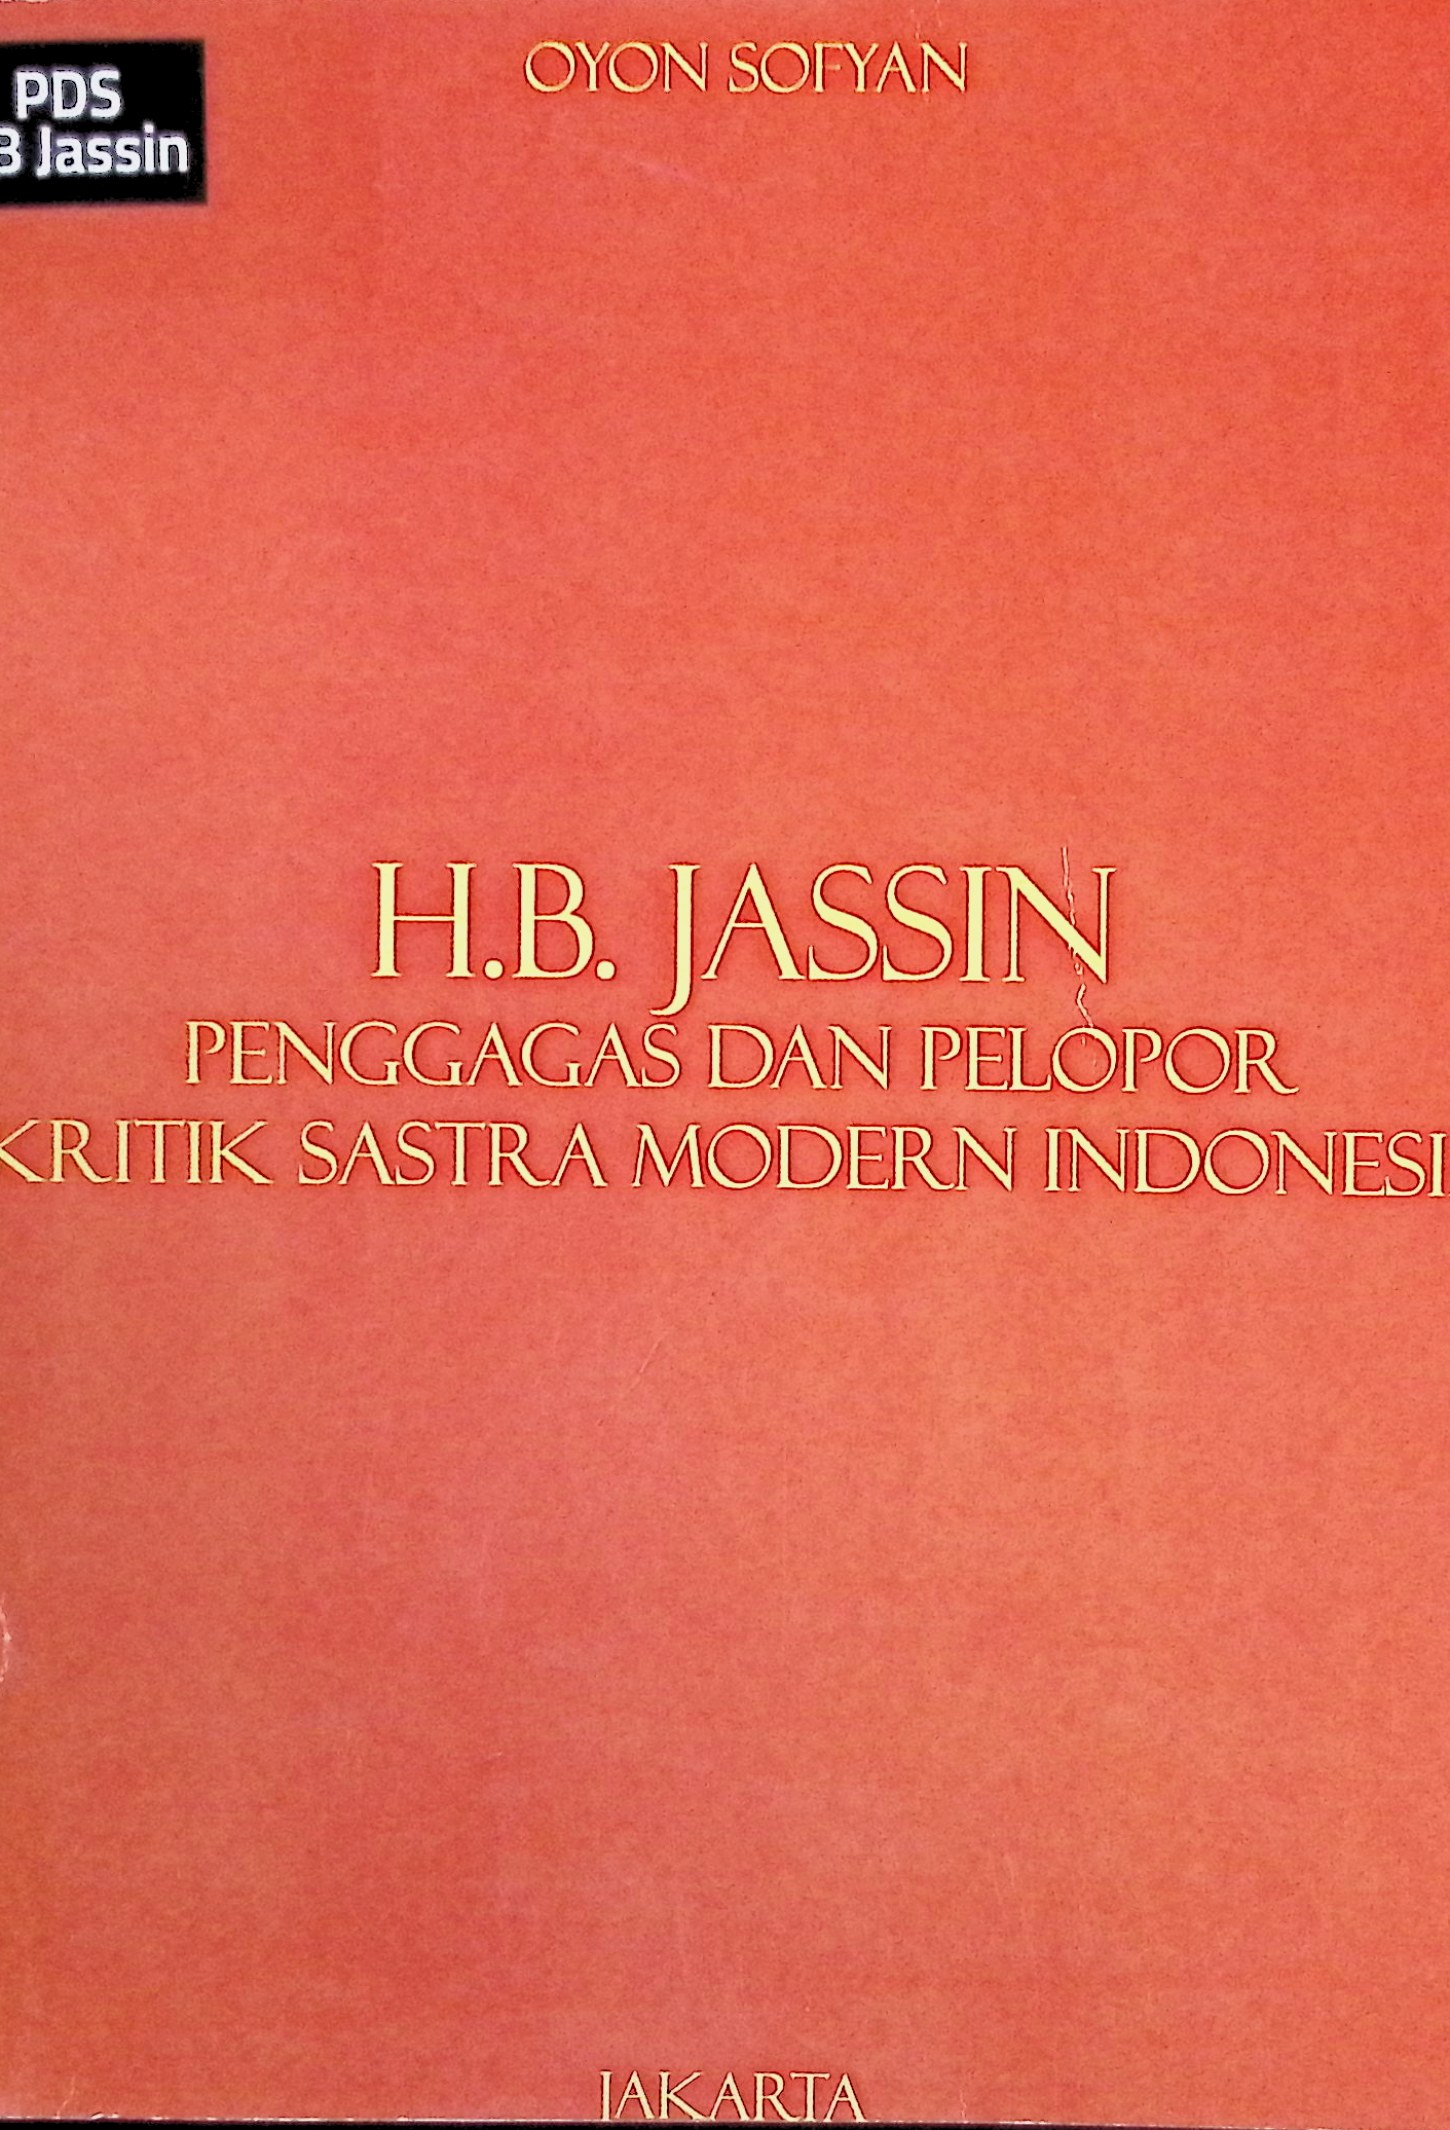 HB Jassin: penggagas dan pelopor kritik sastra modern Indonesia